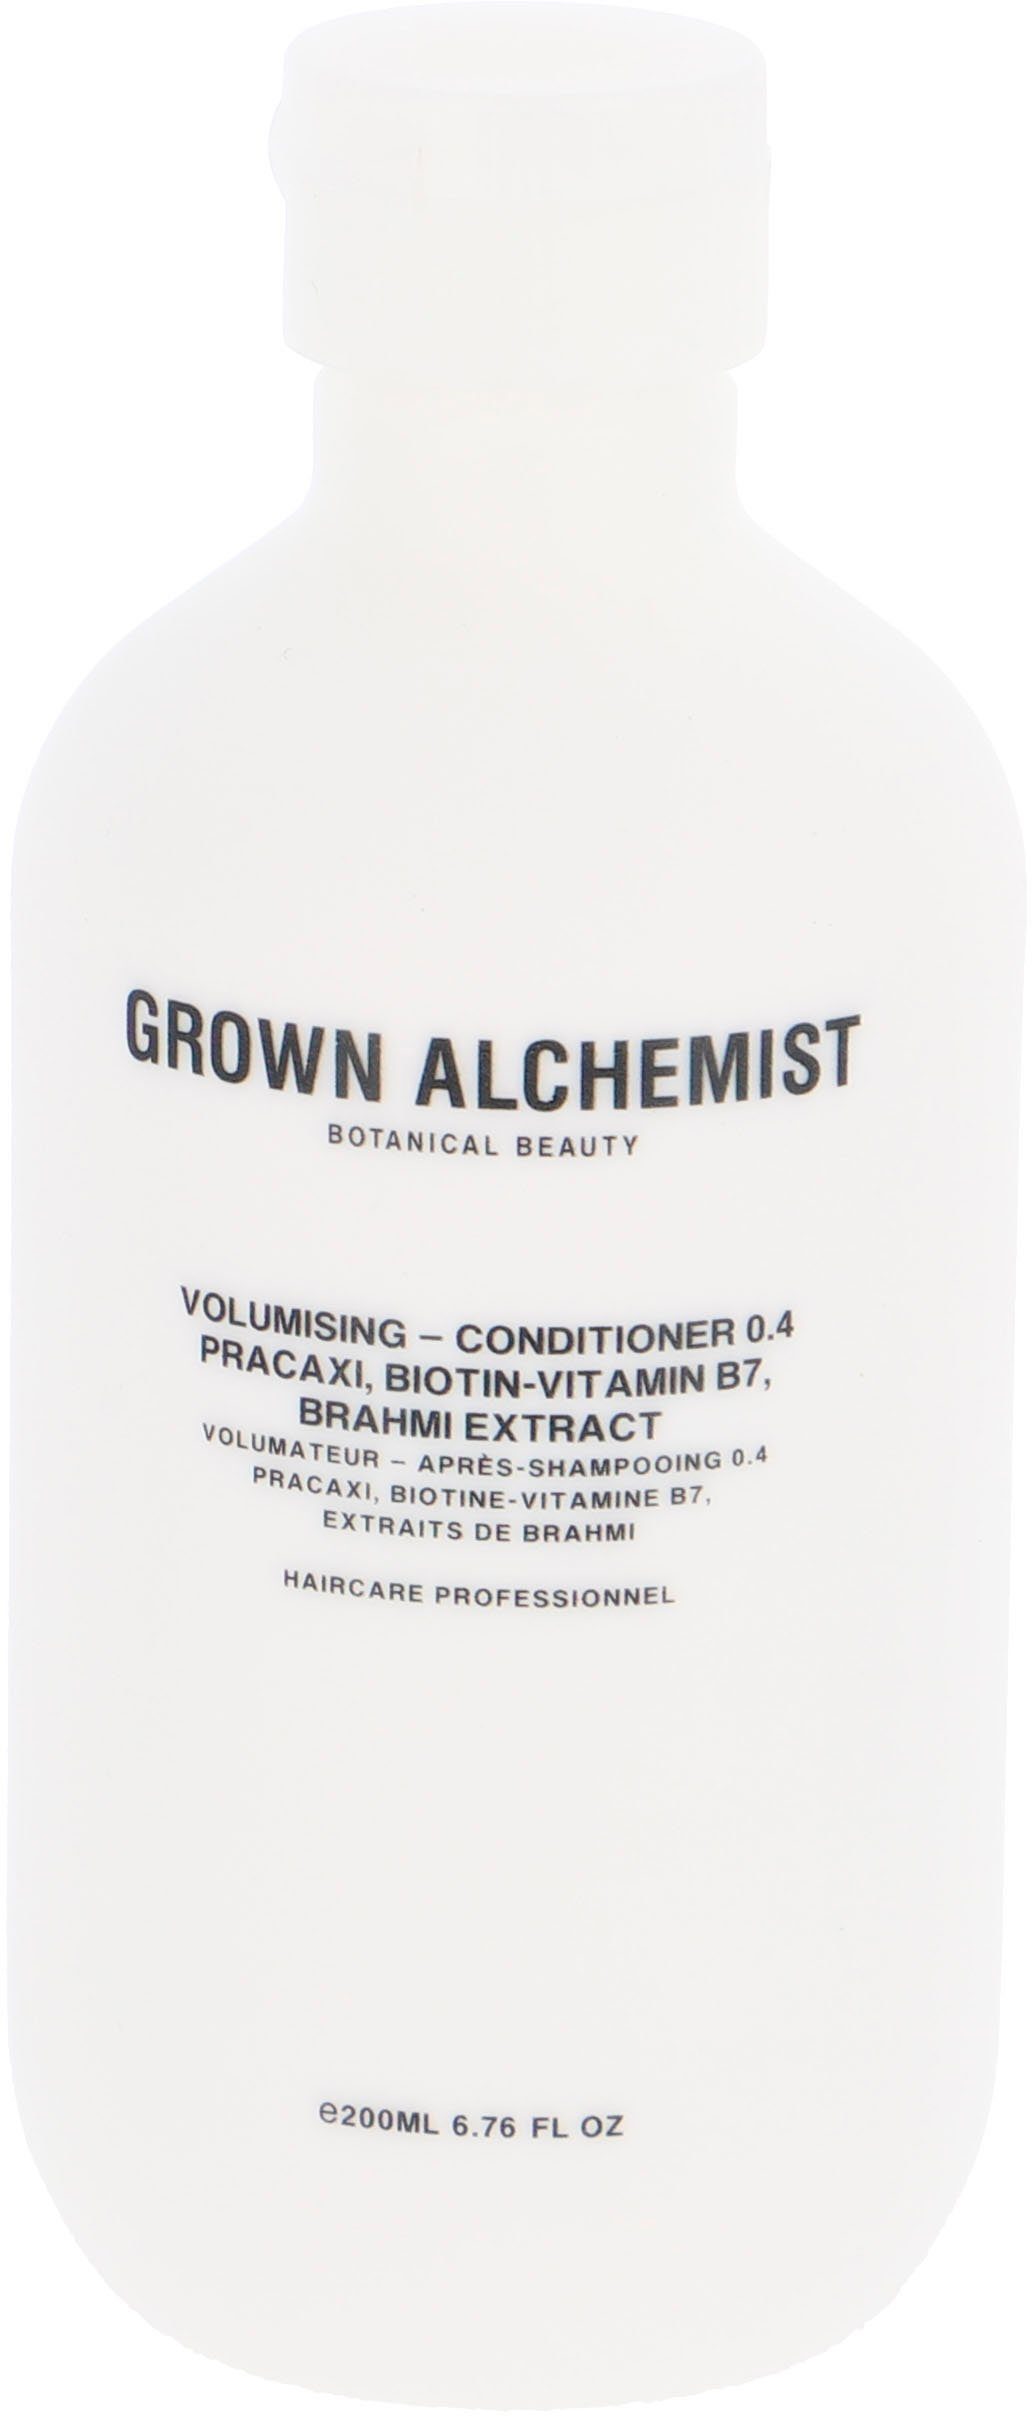 Brahmi Volumising 0.4, Pracaxi, ALCHEMIST Haarspülung Biotin-Vitamin Extract GROWN B7, Conditioner -